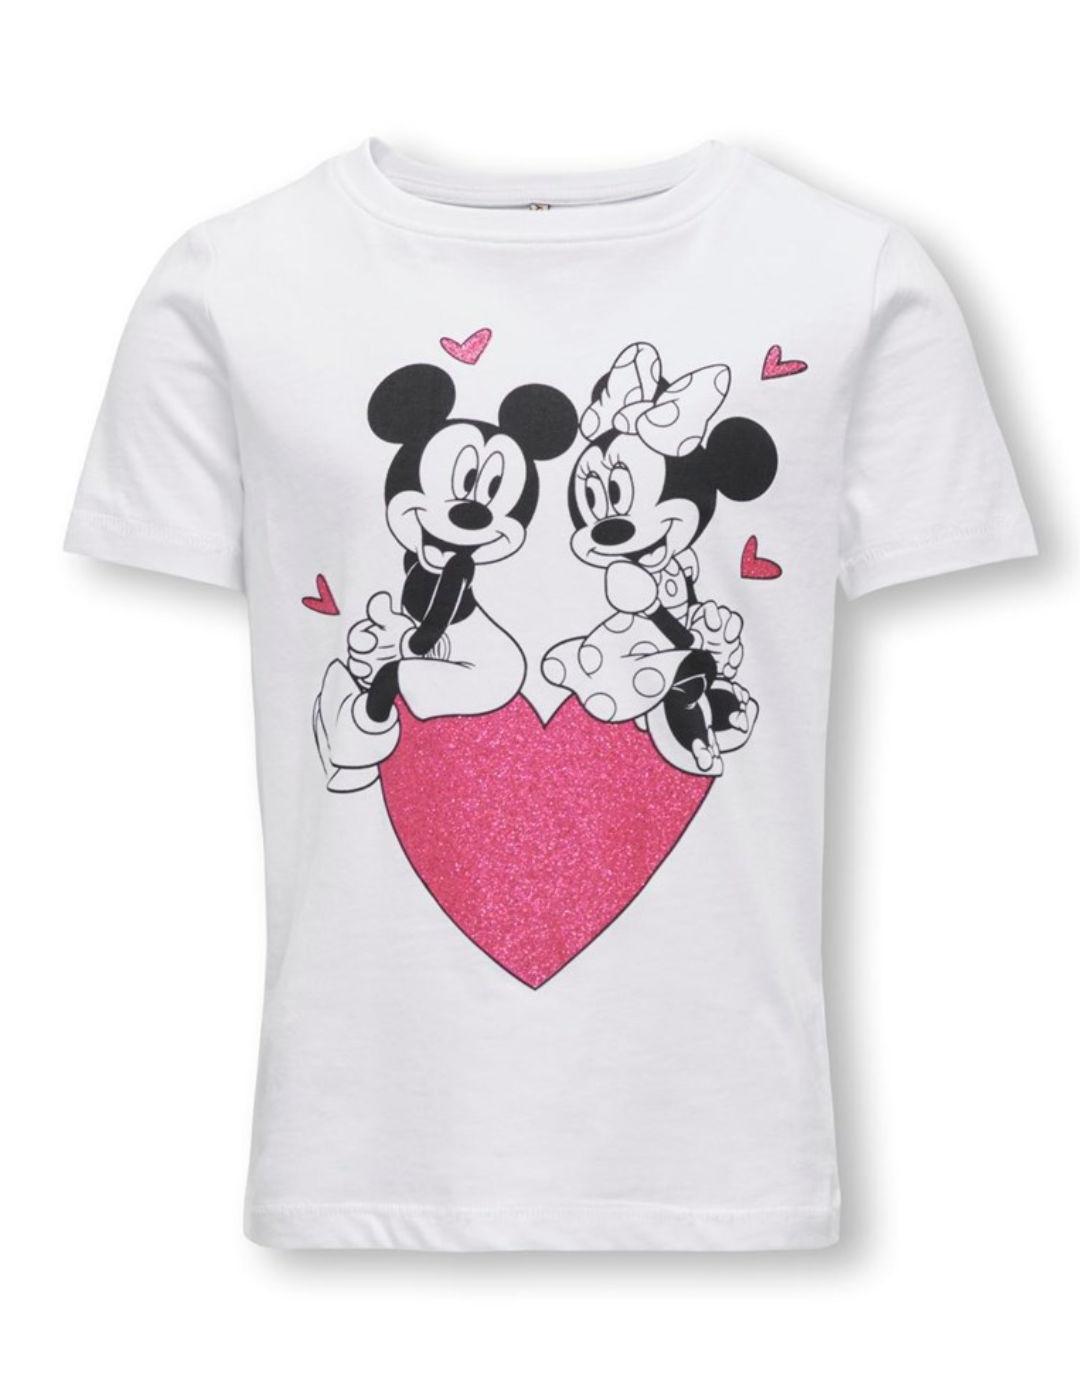 Camiseta Only Kids Mickey blanca manga corta para niña